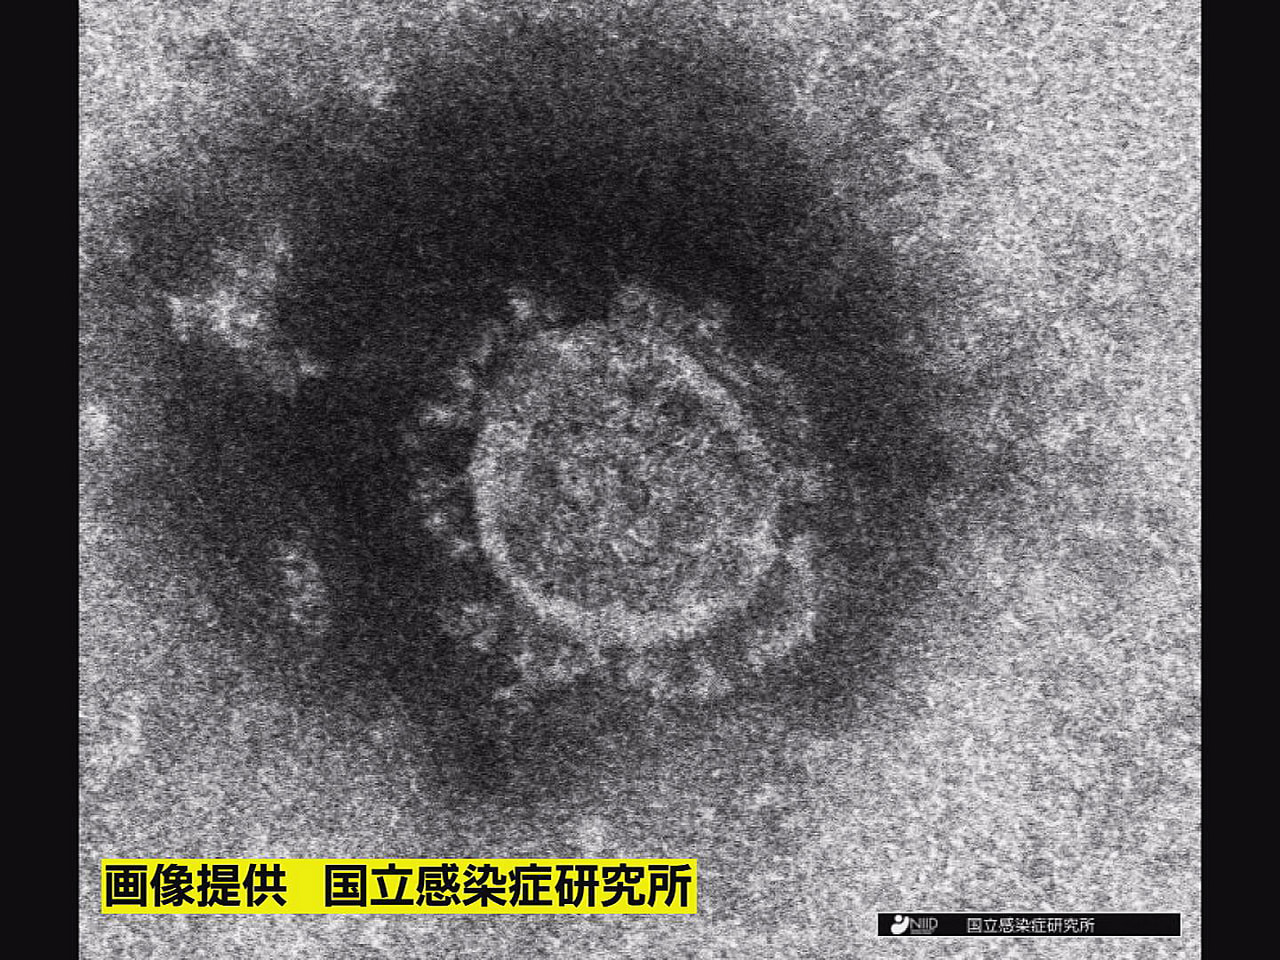 岐阜県は２６日、新型コロナウイルスの新規感染者が７５２人確認されたと発表しました...